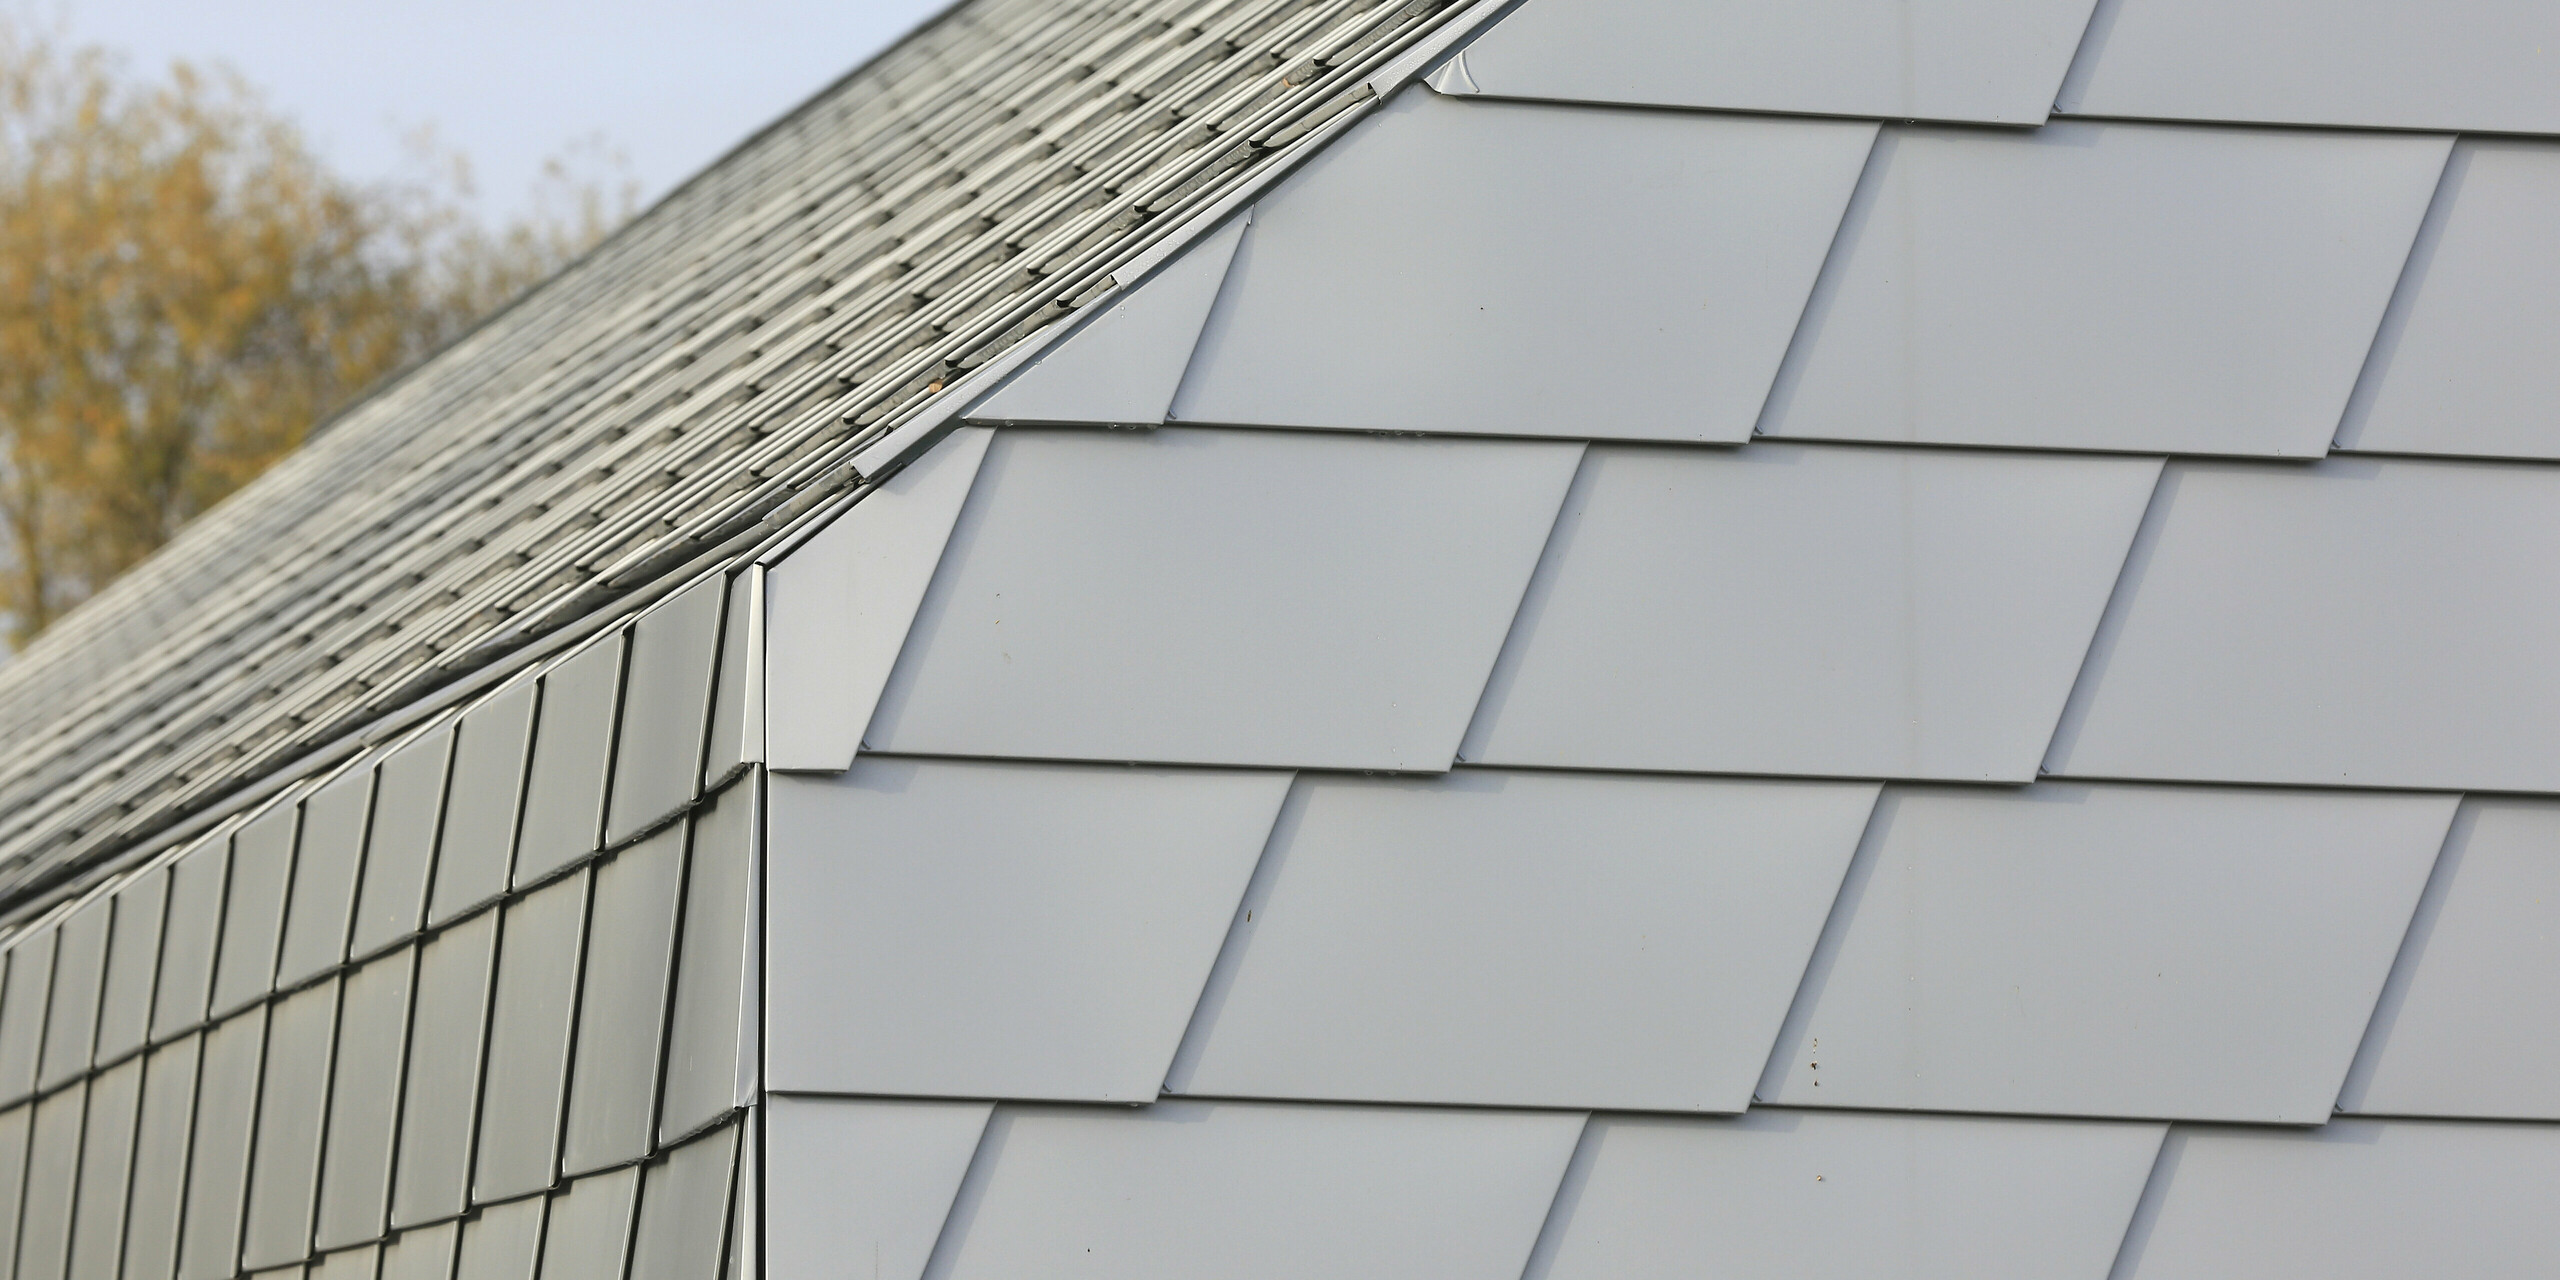 Nahtloser Übergang vom Dach zur Fassade mit kleinformatigen Schindeln von PREFA am Tierschutzverein Mullhouse